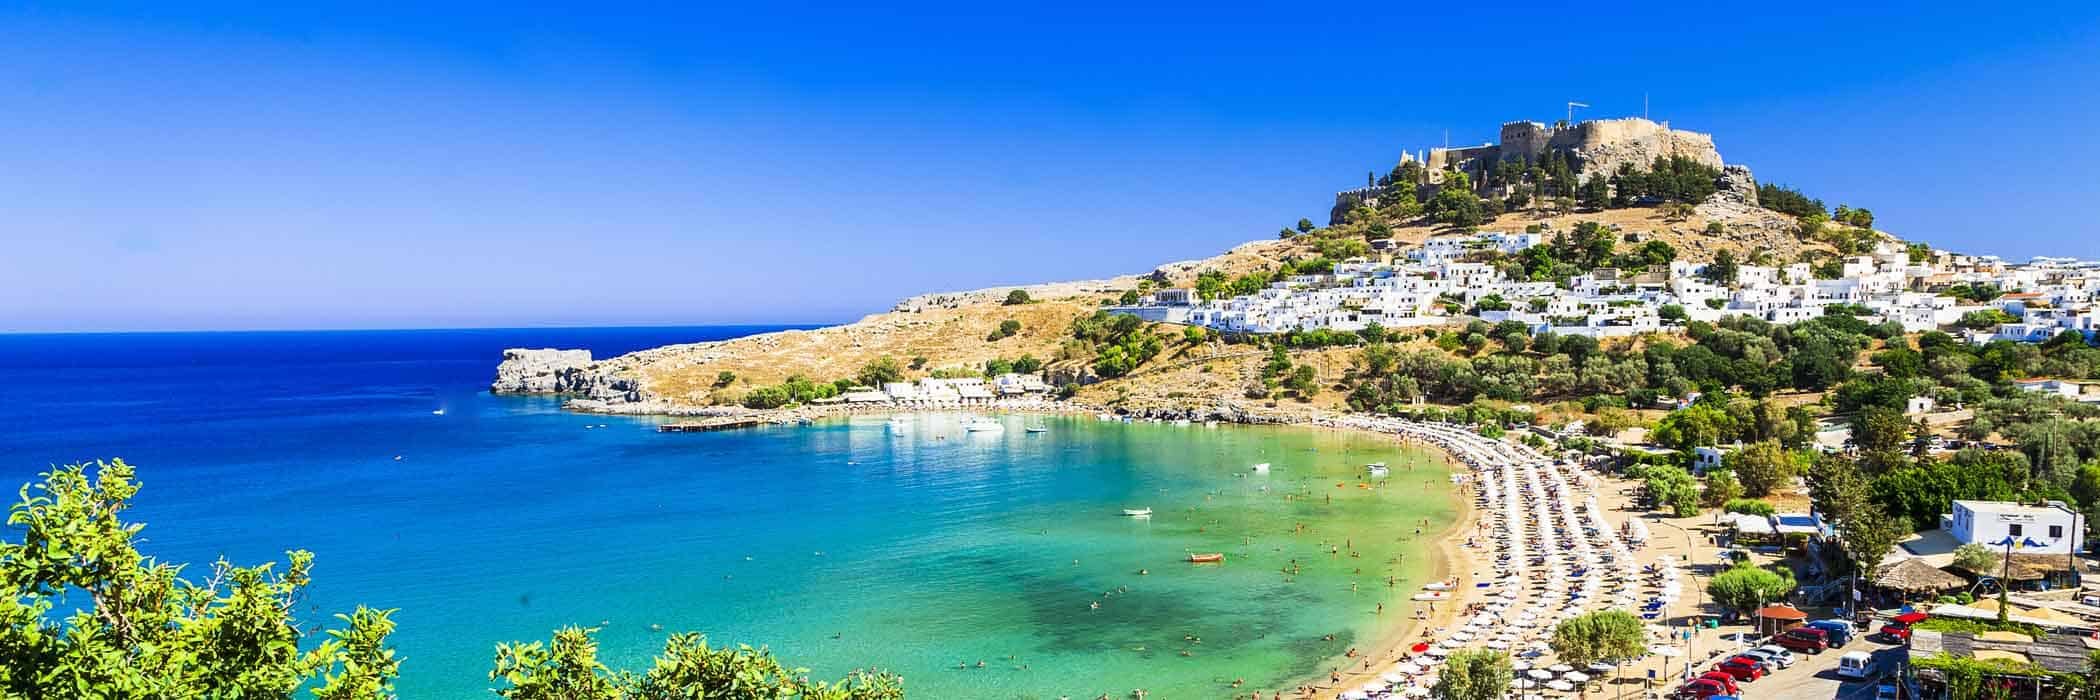 Lindos Beach, Rhodes, Greece - Greece Villa Holidays